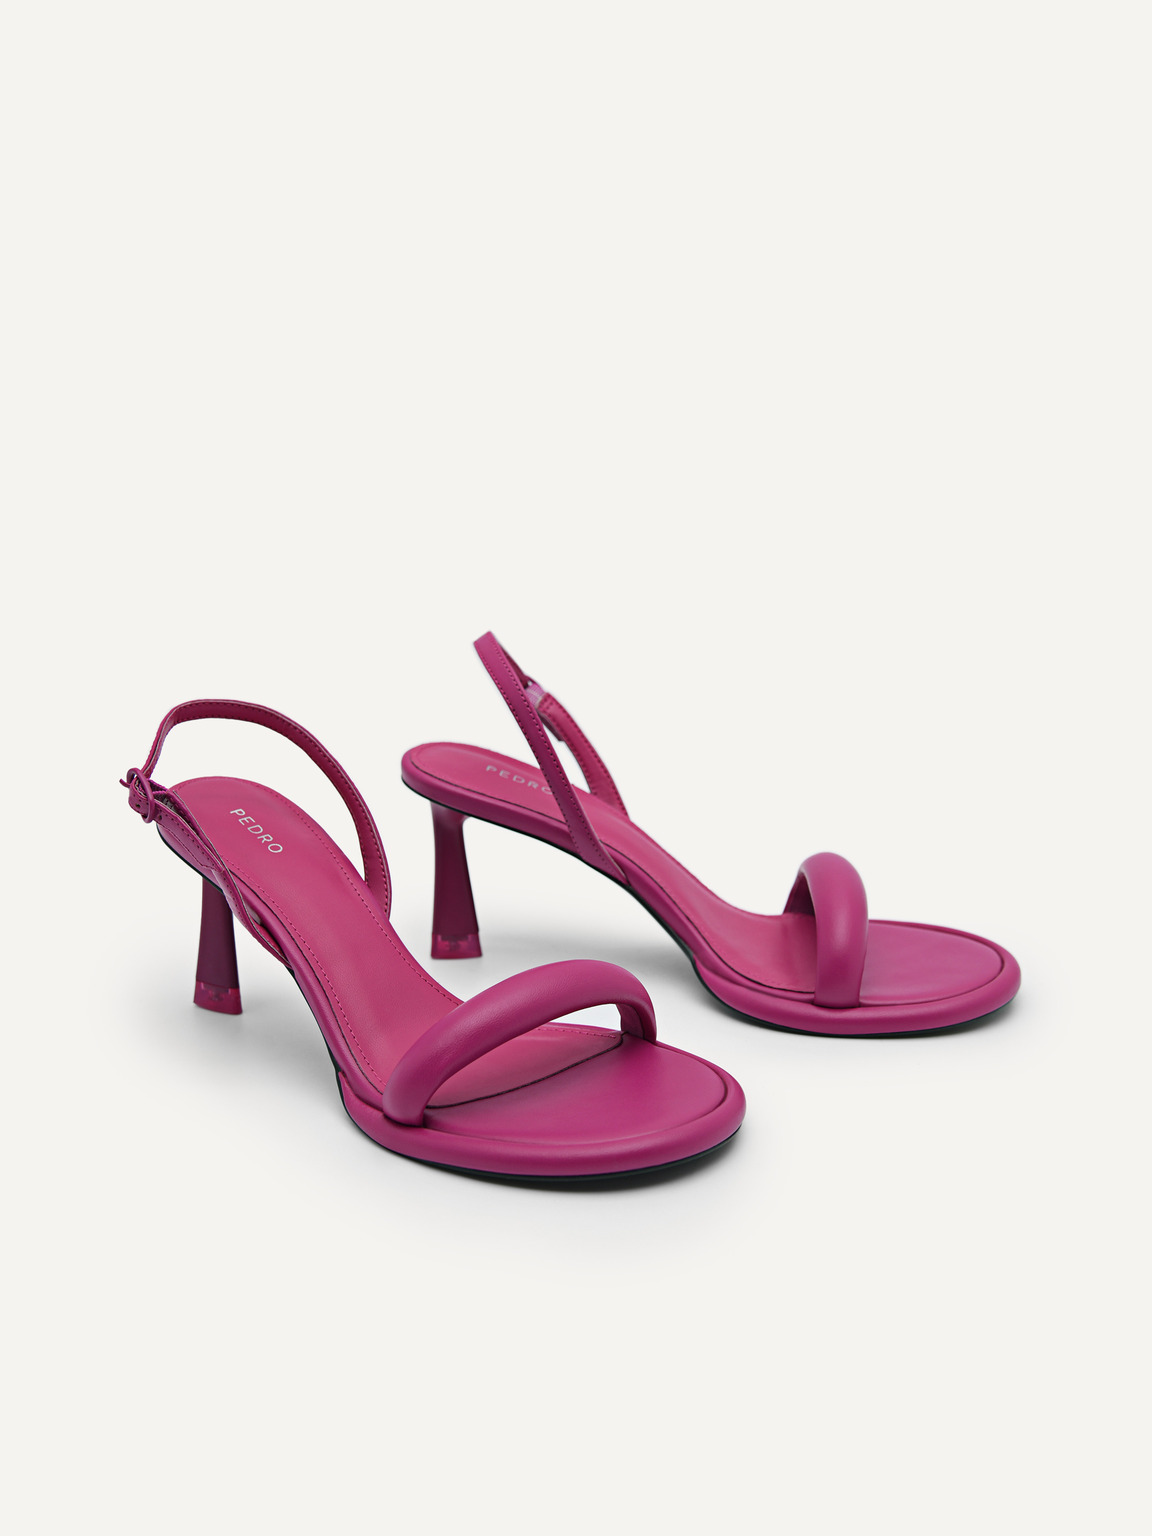 Terrazo高跟鞋配可拆卸線圈綁帶, 深紫红色